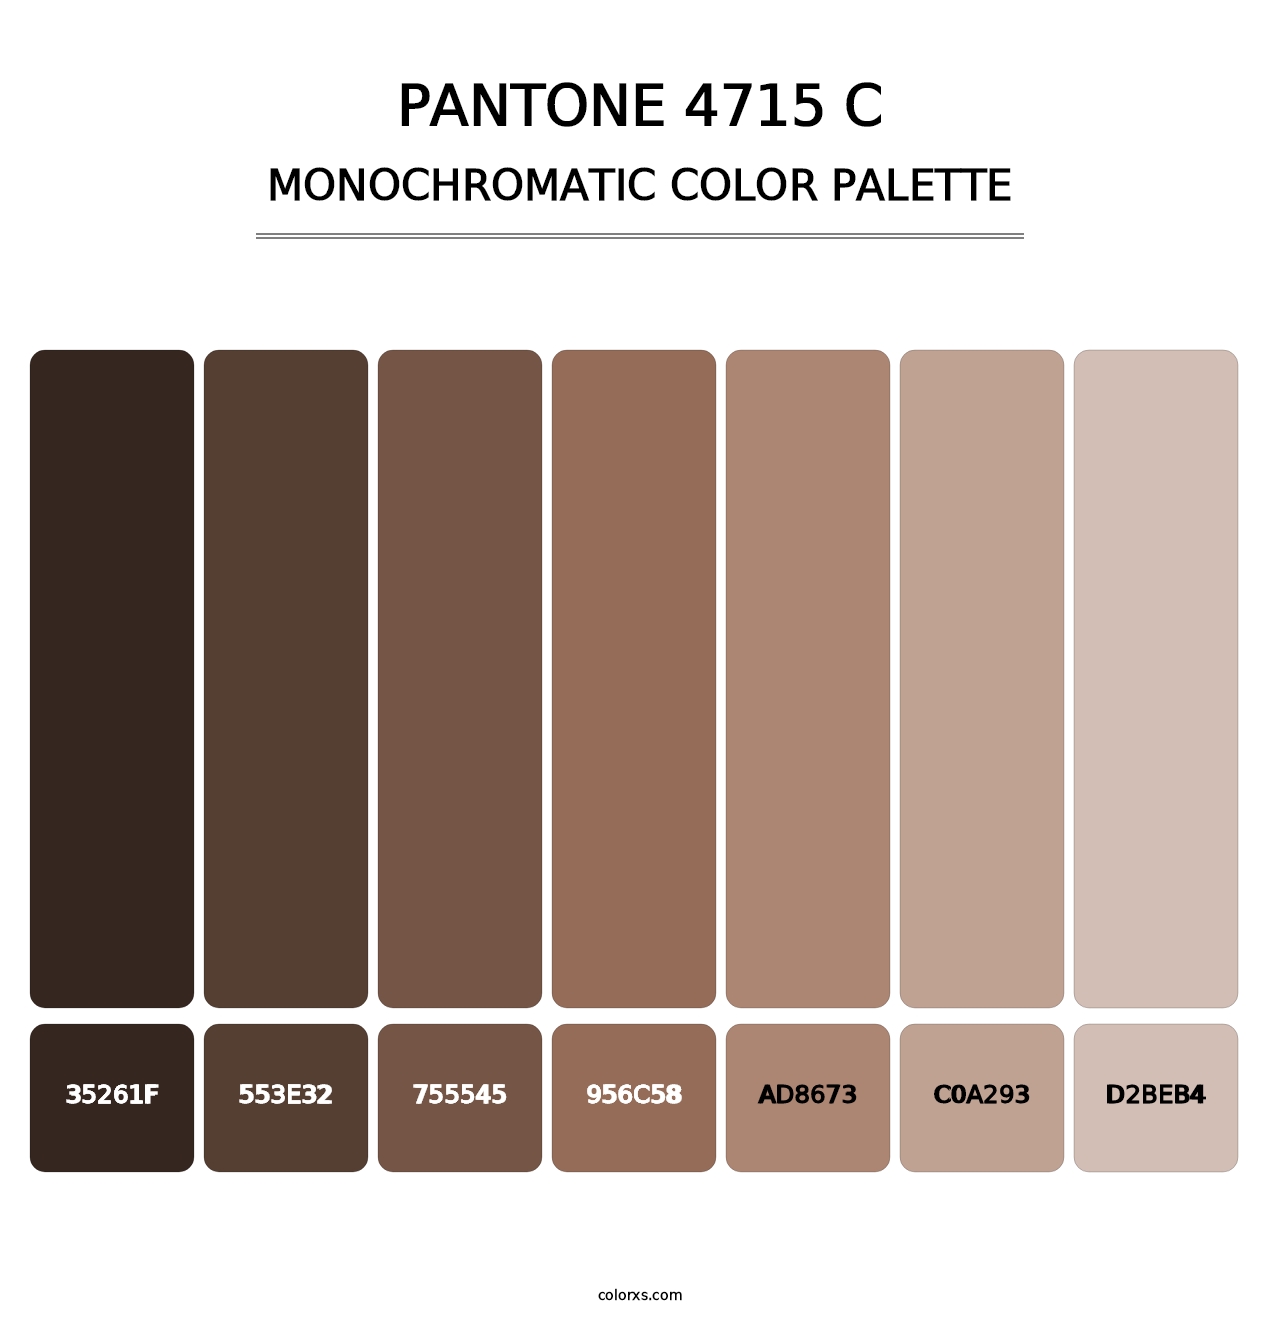 PANTONE 4715 C - Monochromatic Color Palette